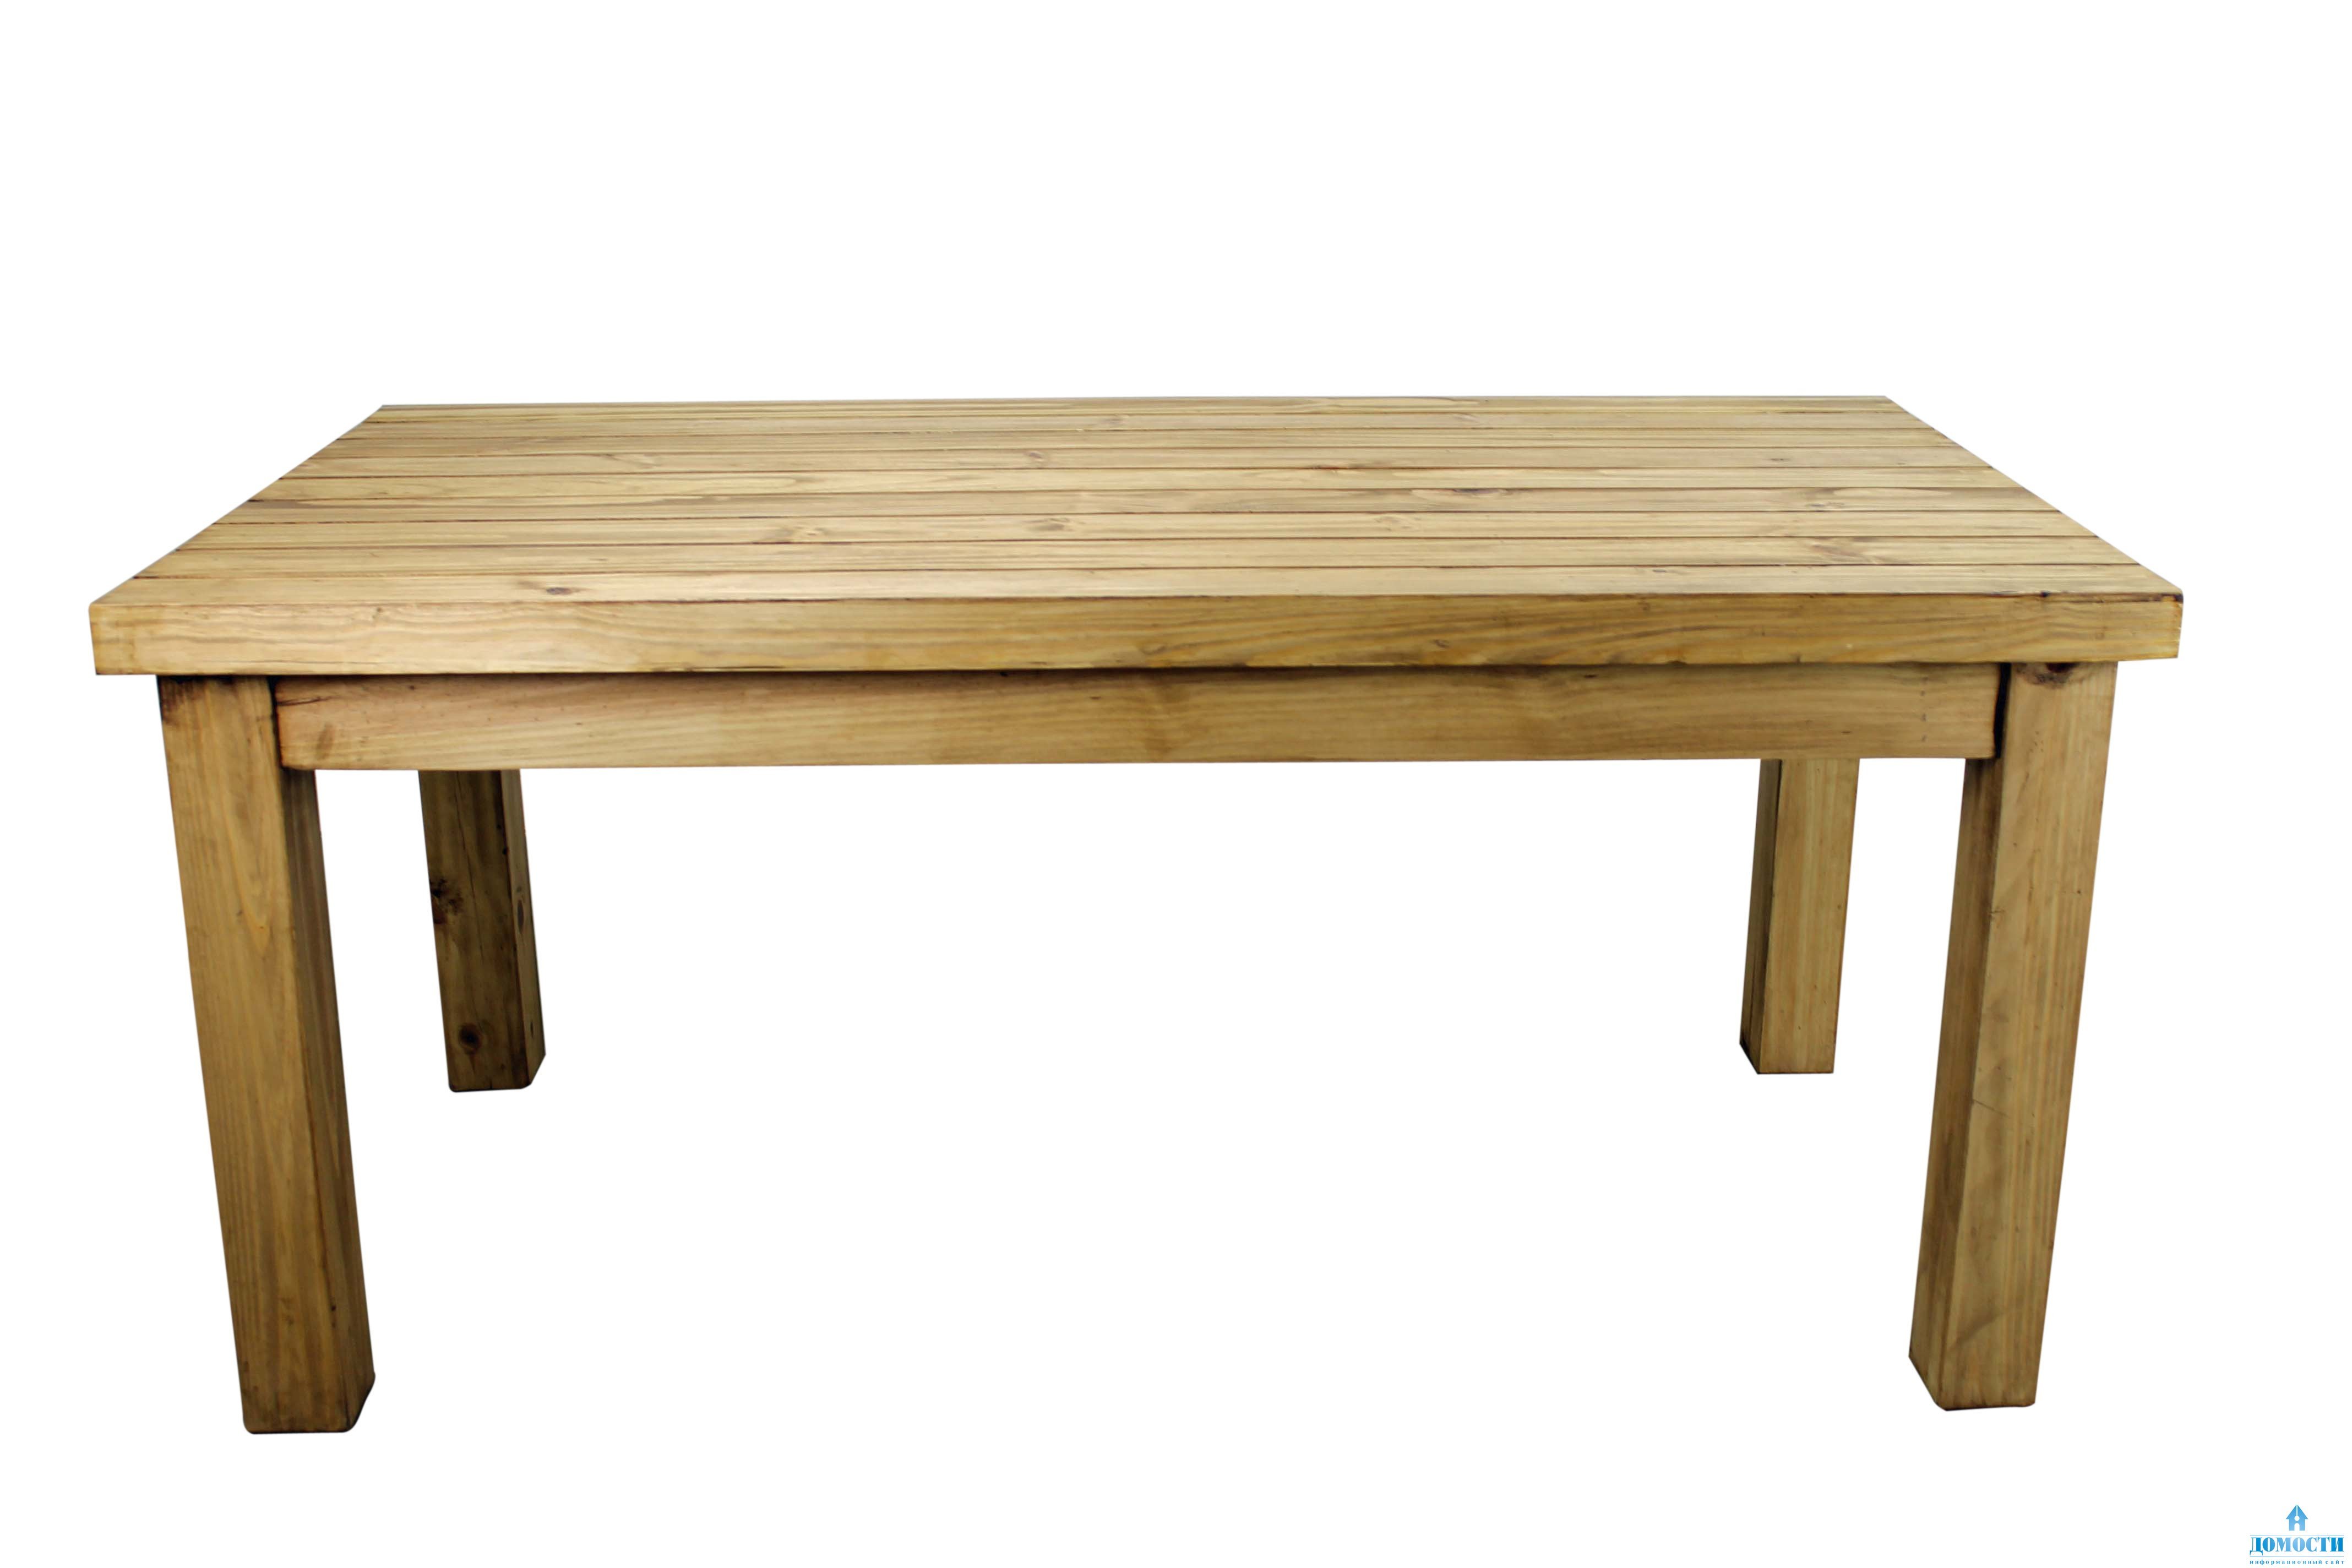 Картинка стол. Стол деревянный. Стол из дерева. Белый деревянный стол фон. Обычный деревянный стол.